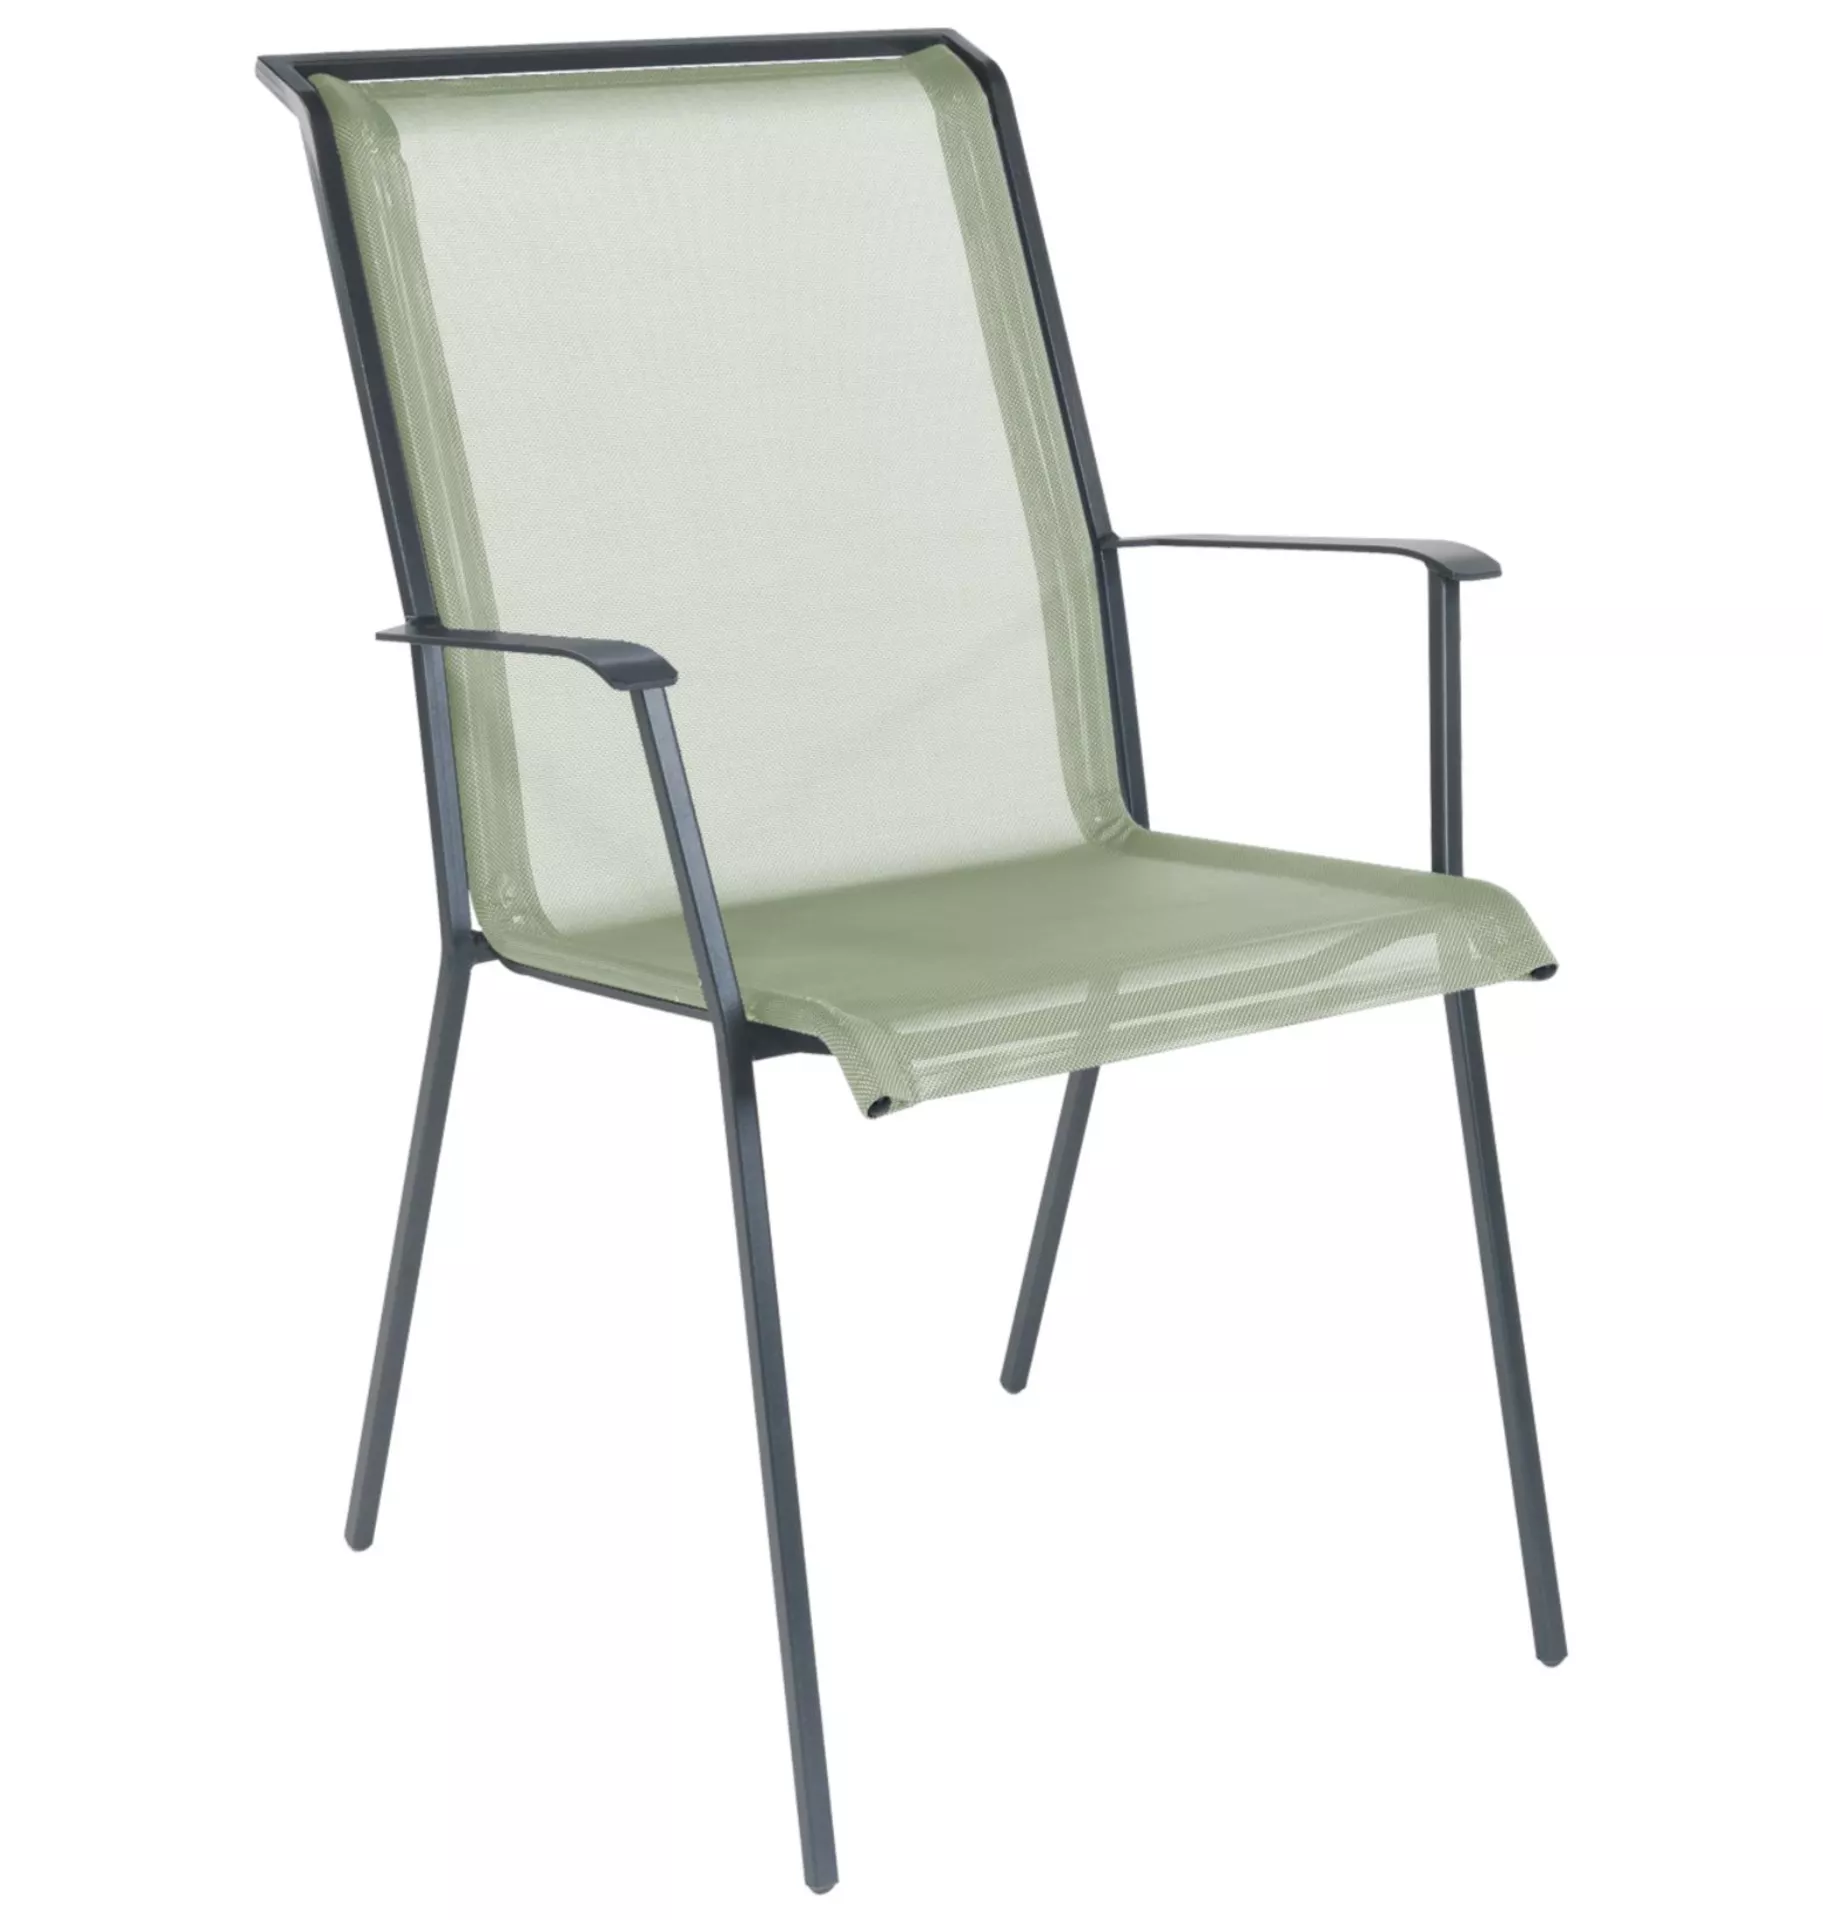 Matten-Sessel Chur Schaffner / Farbe: Cremegrün